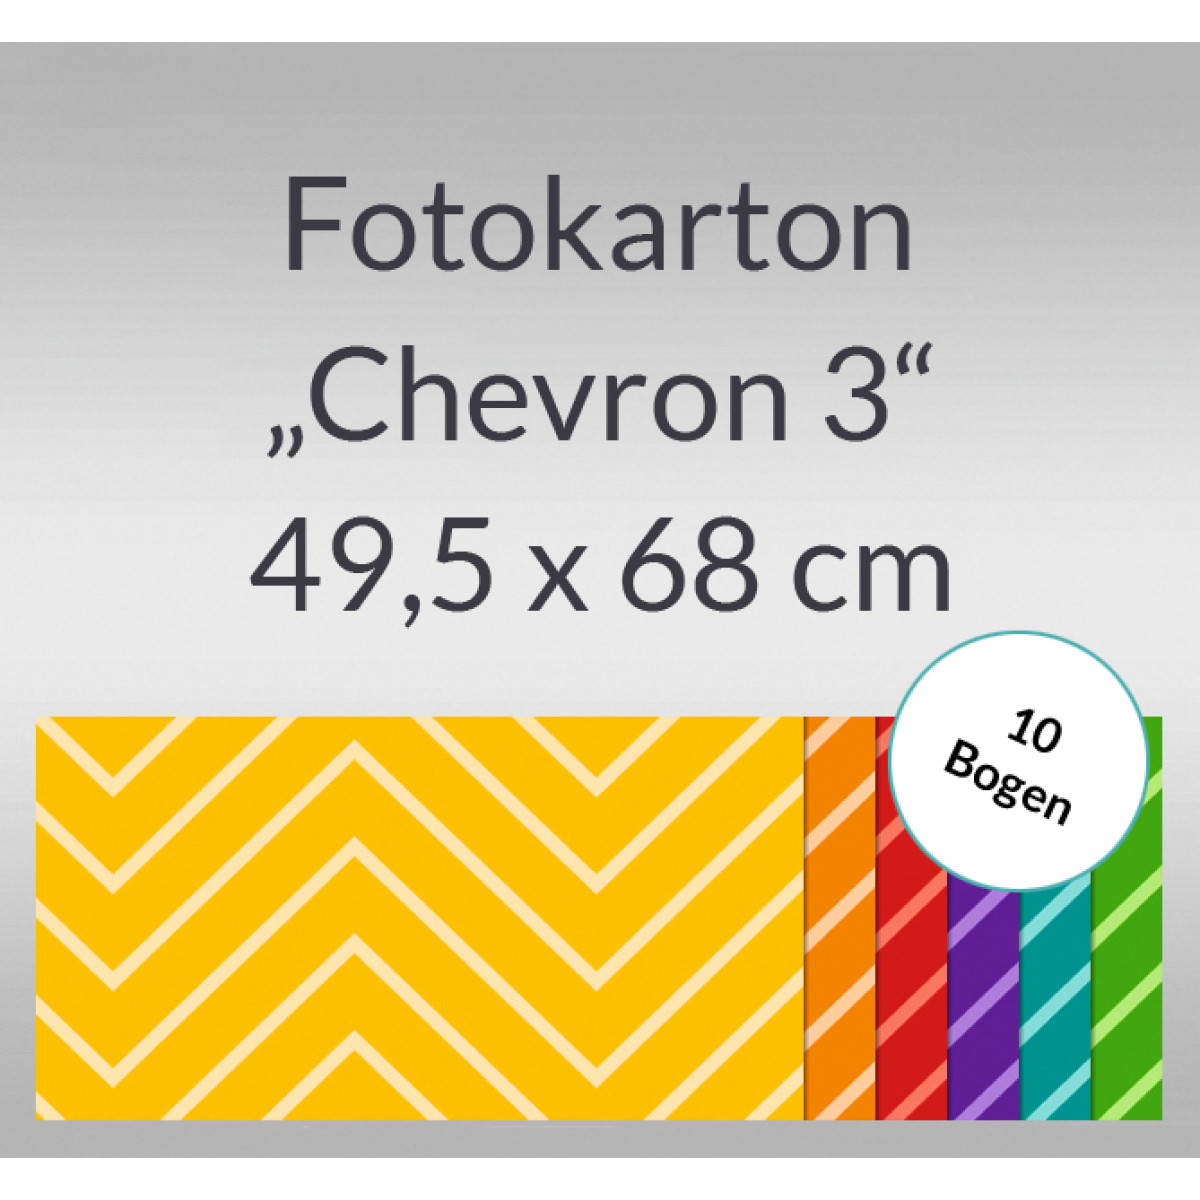 Fotokarton "Chevron 3" 49,5 x 68 cm - 10 Bogen